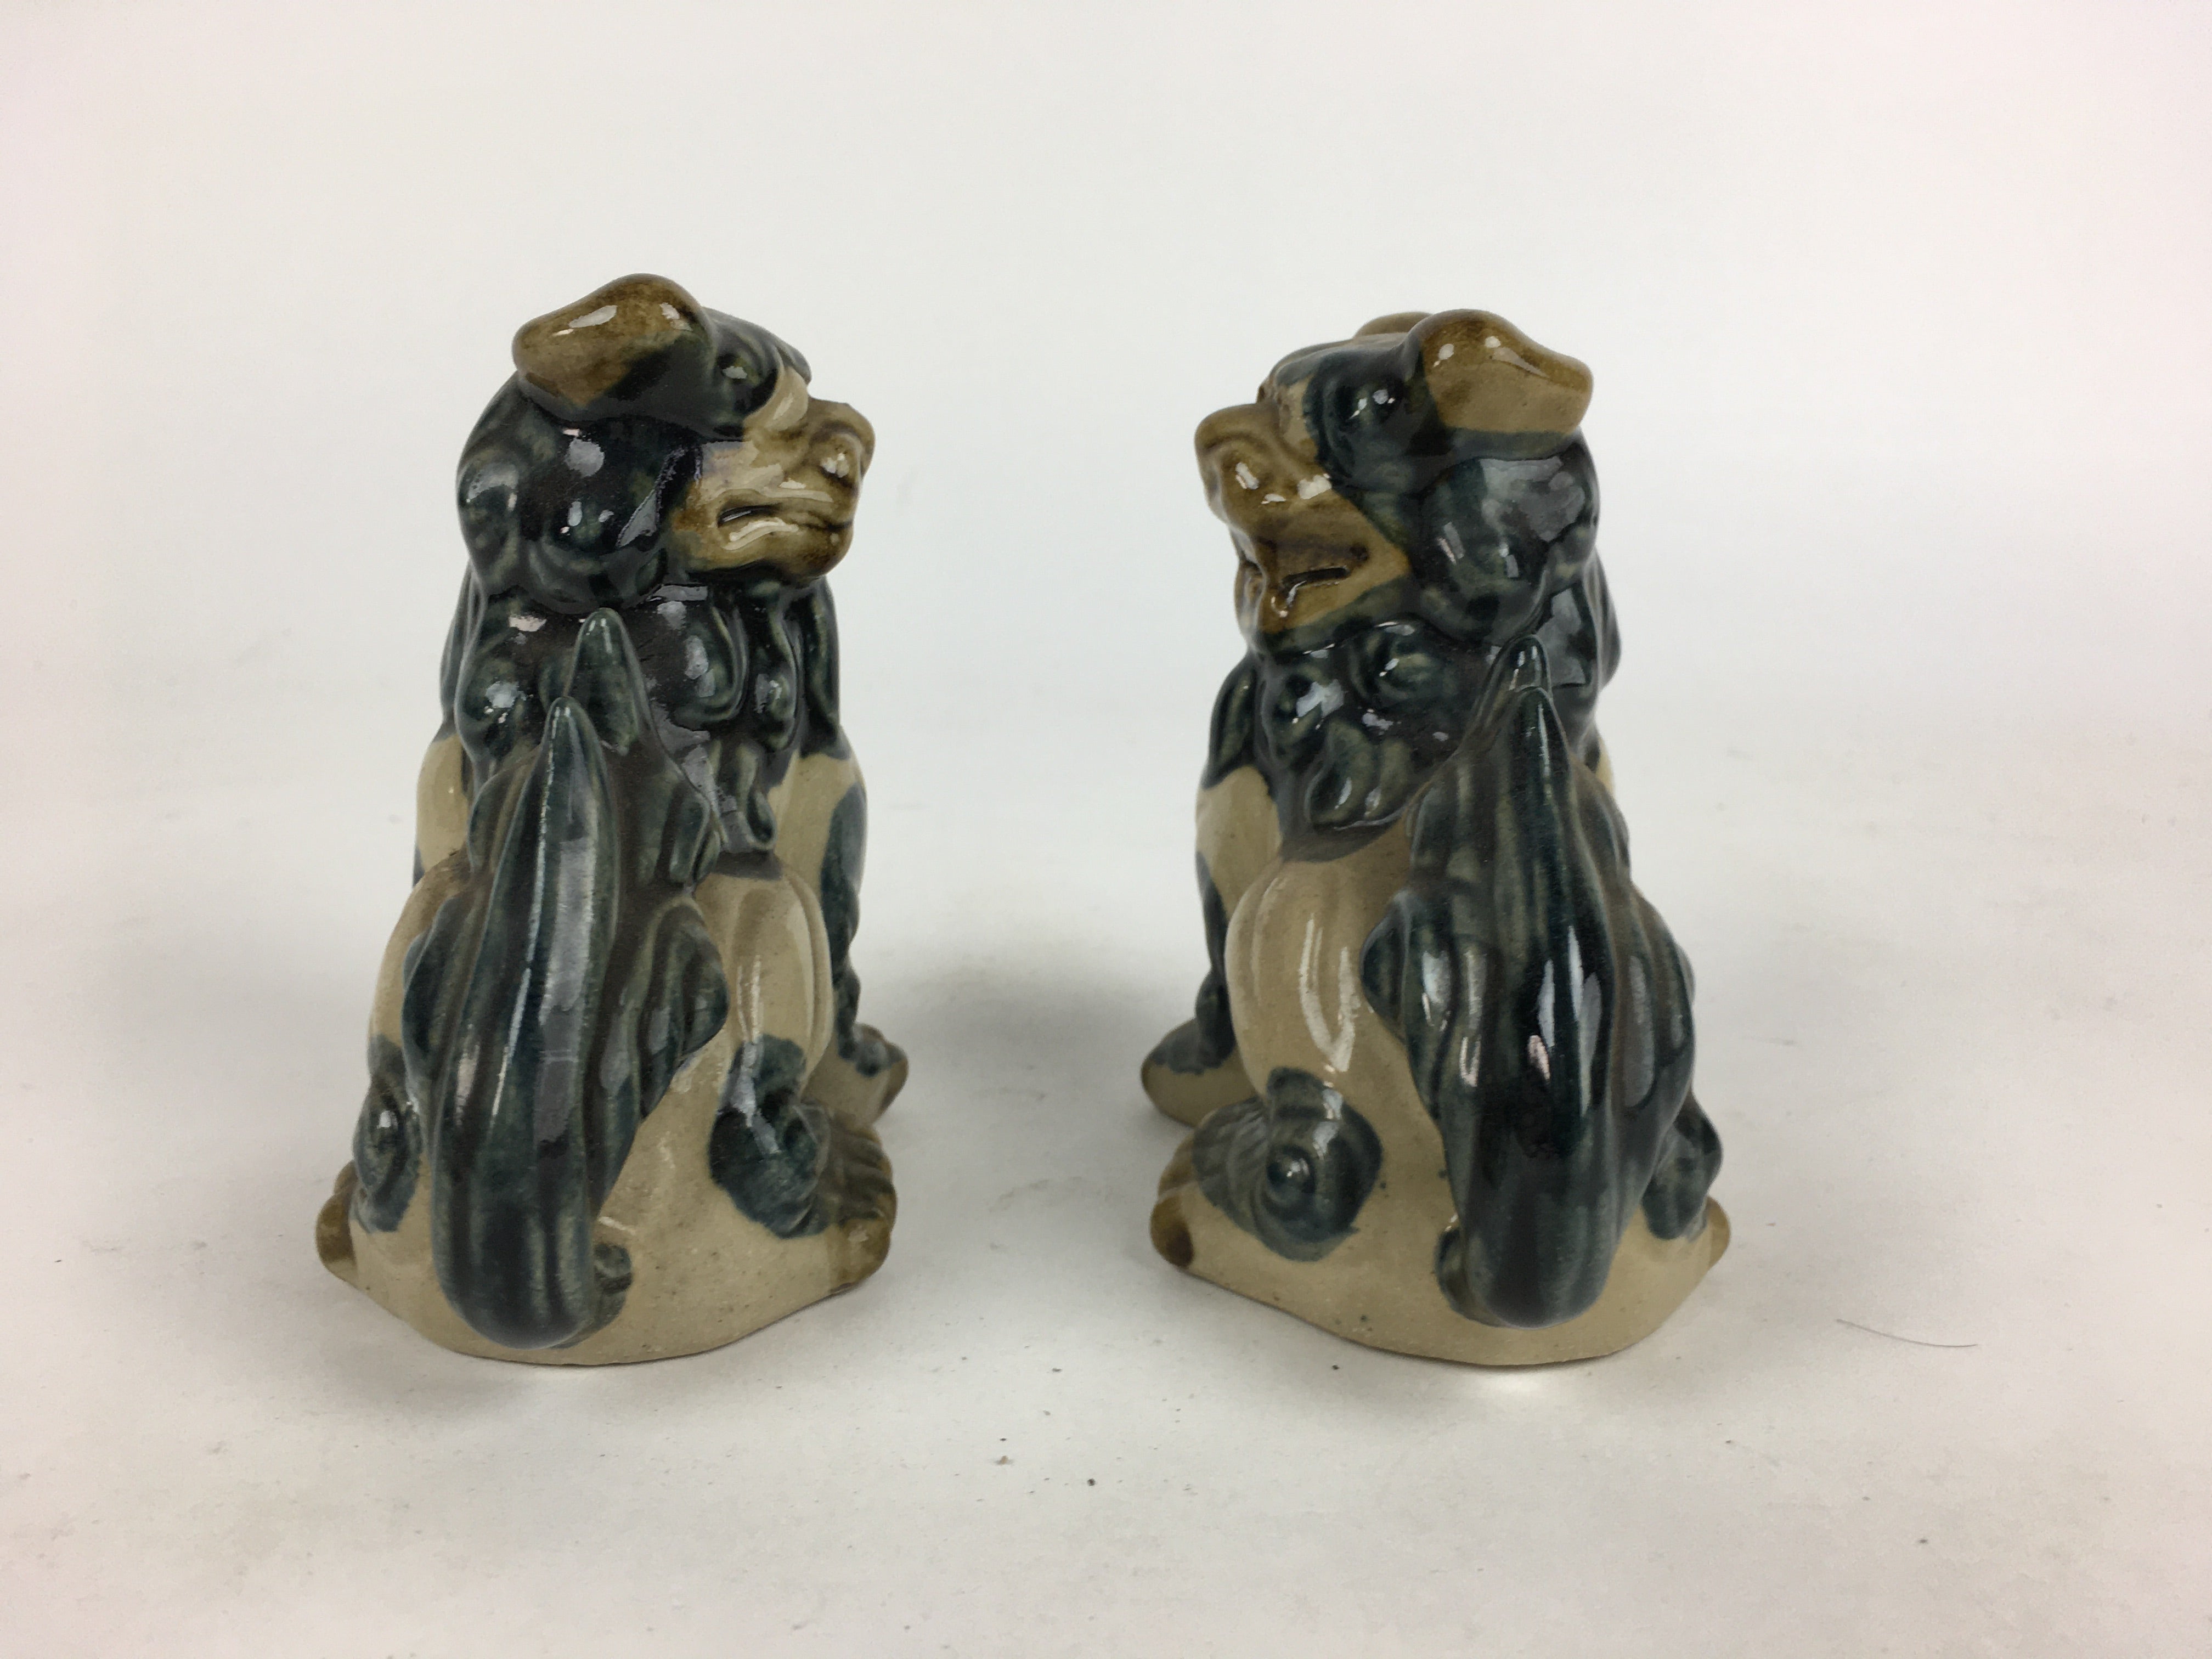 Japanese Ceramic Foo Dog Pair Statue Vtg Shishi Komainu Okimono BD793